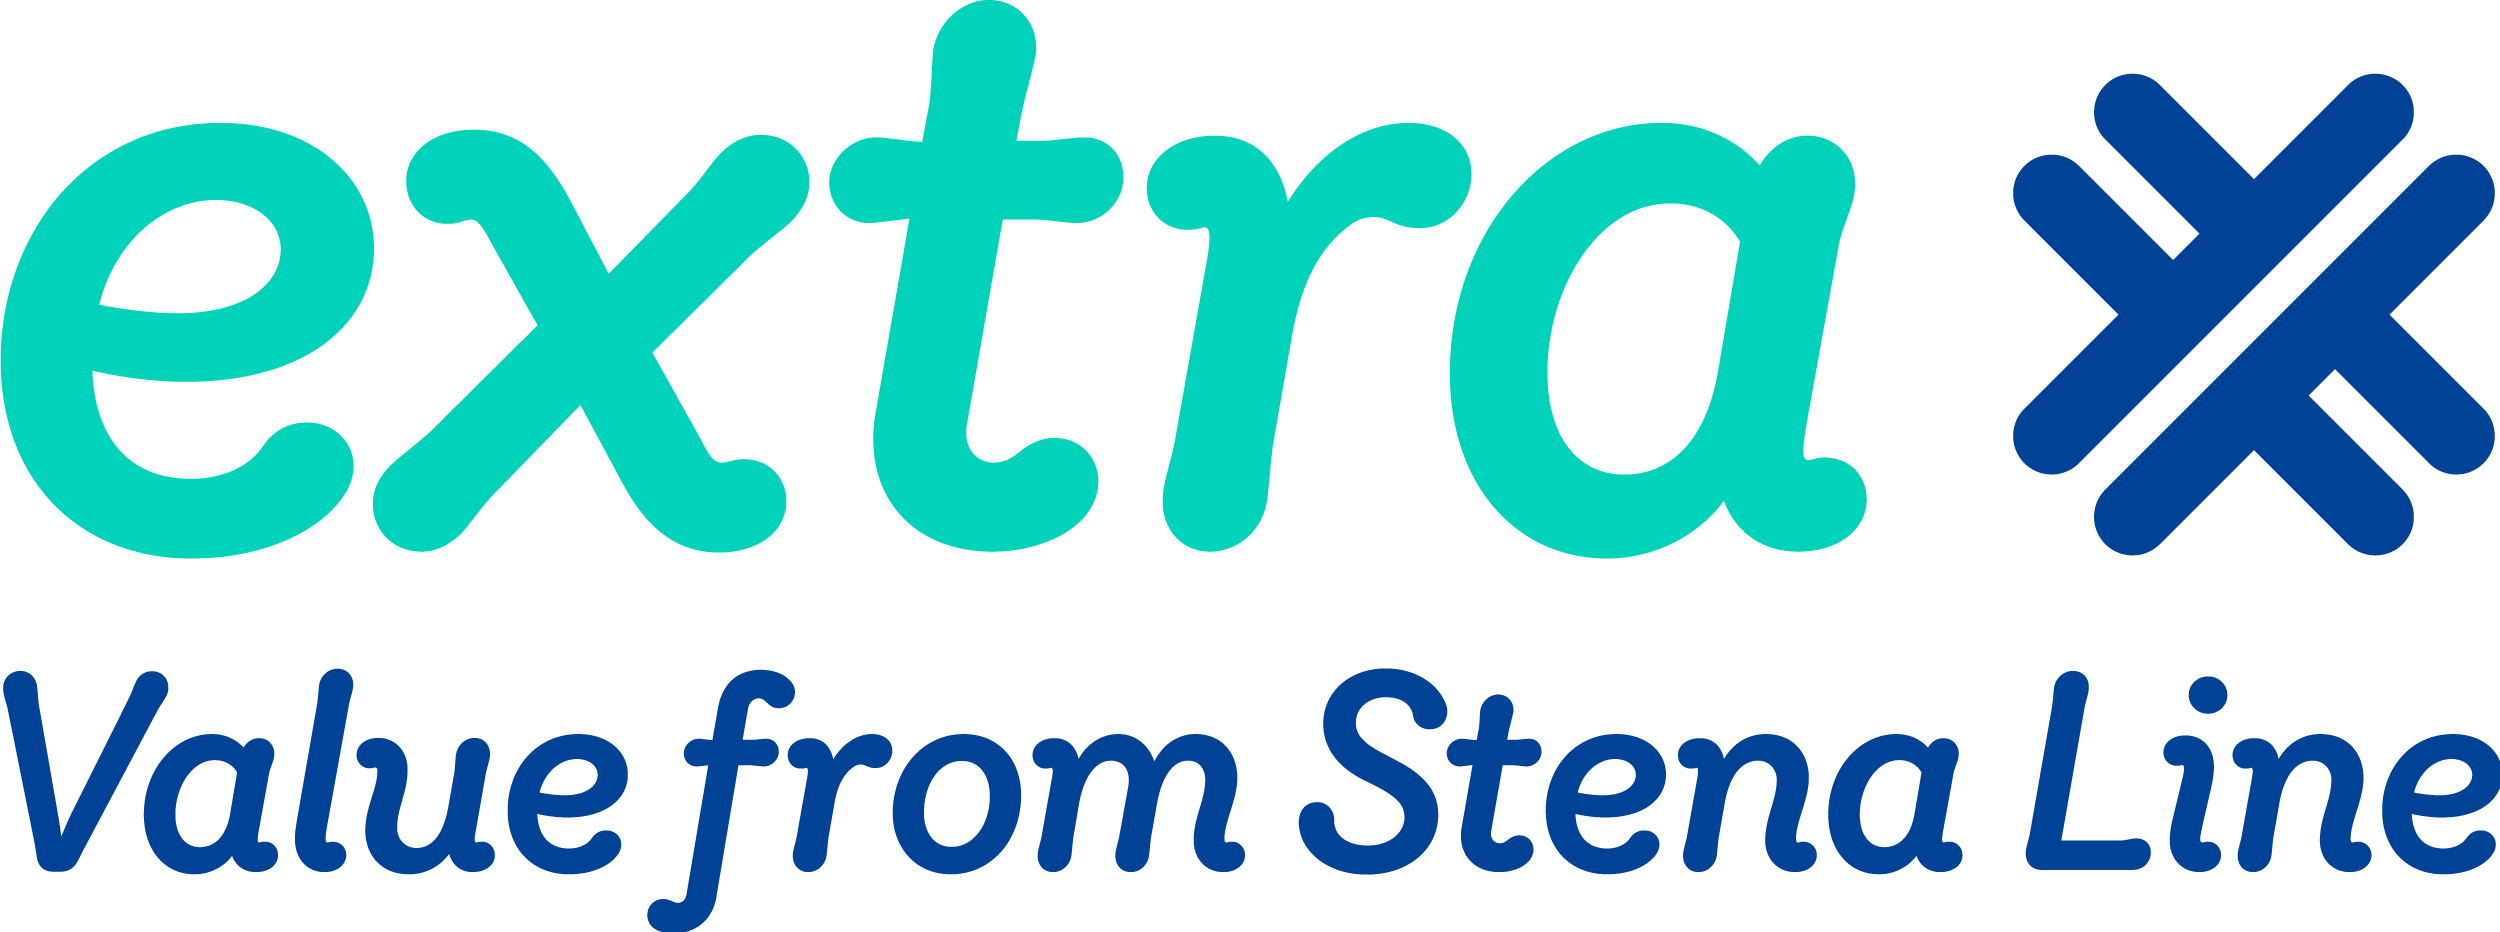 Logo klubu członkowskiego Stena Line o nazwie „Extra”.